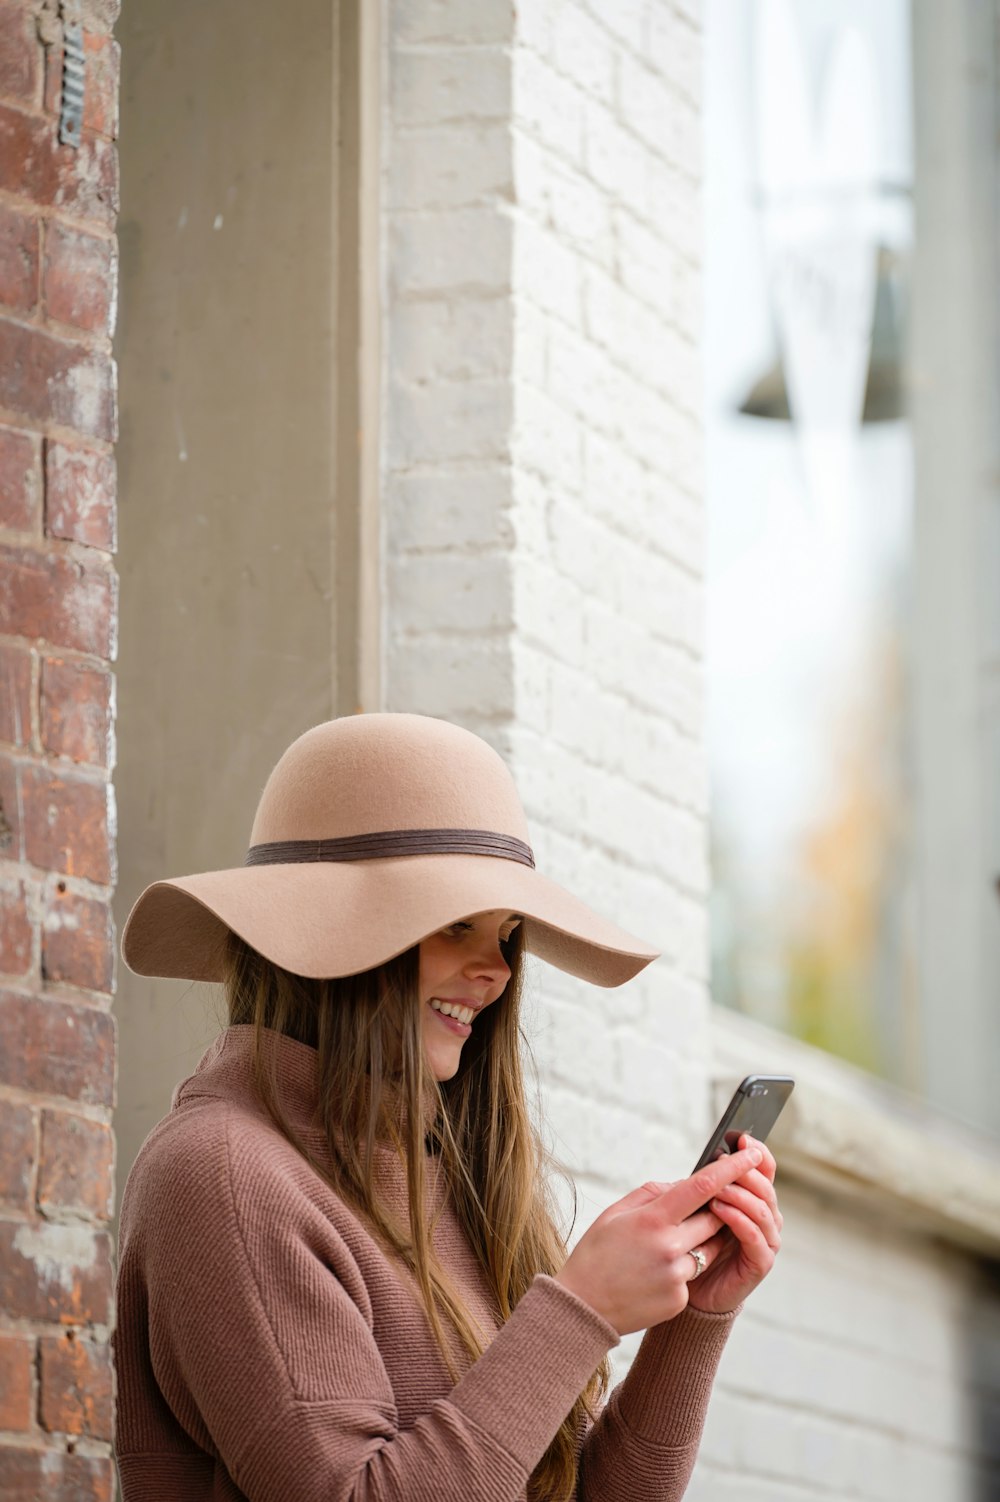 茶色の帽子と茶色のセーターを着た女性がスマートフォンを持っている